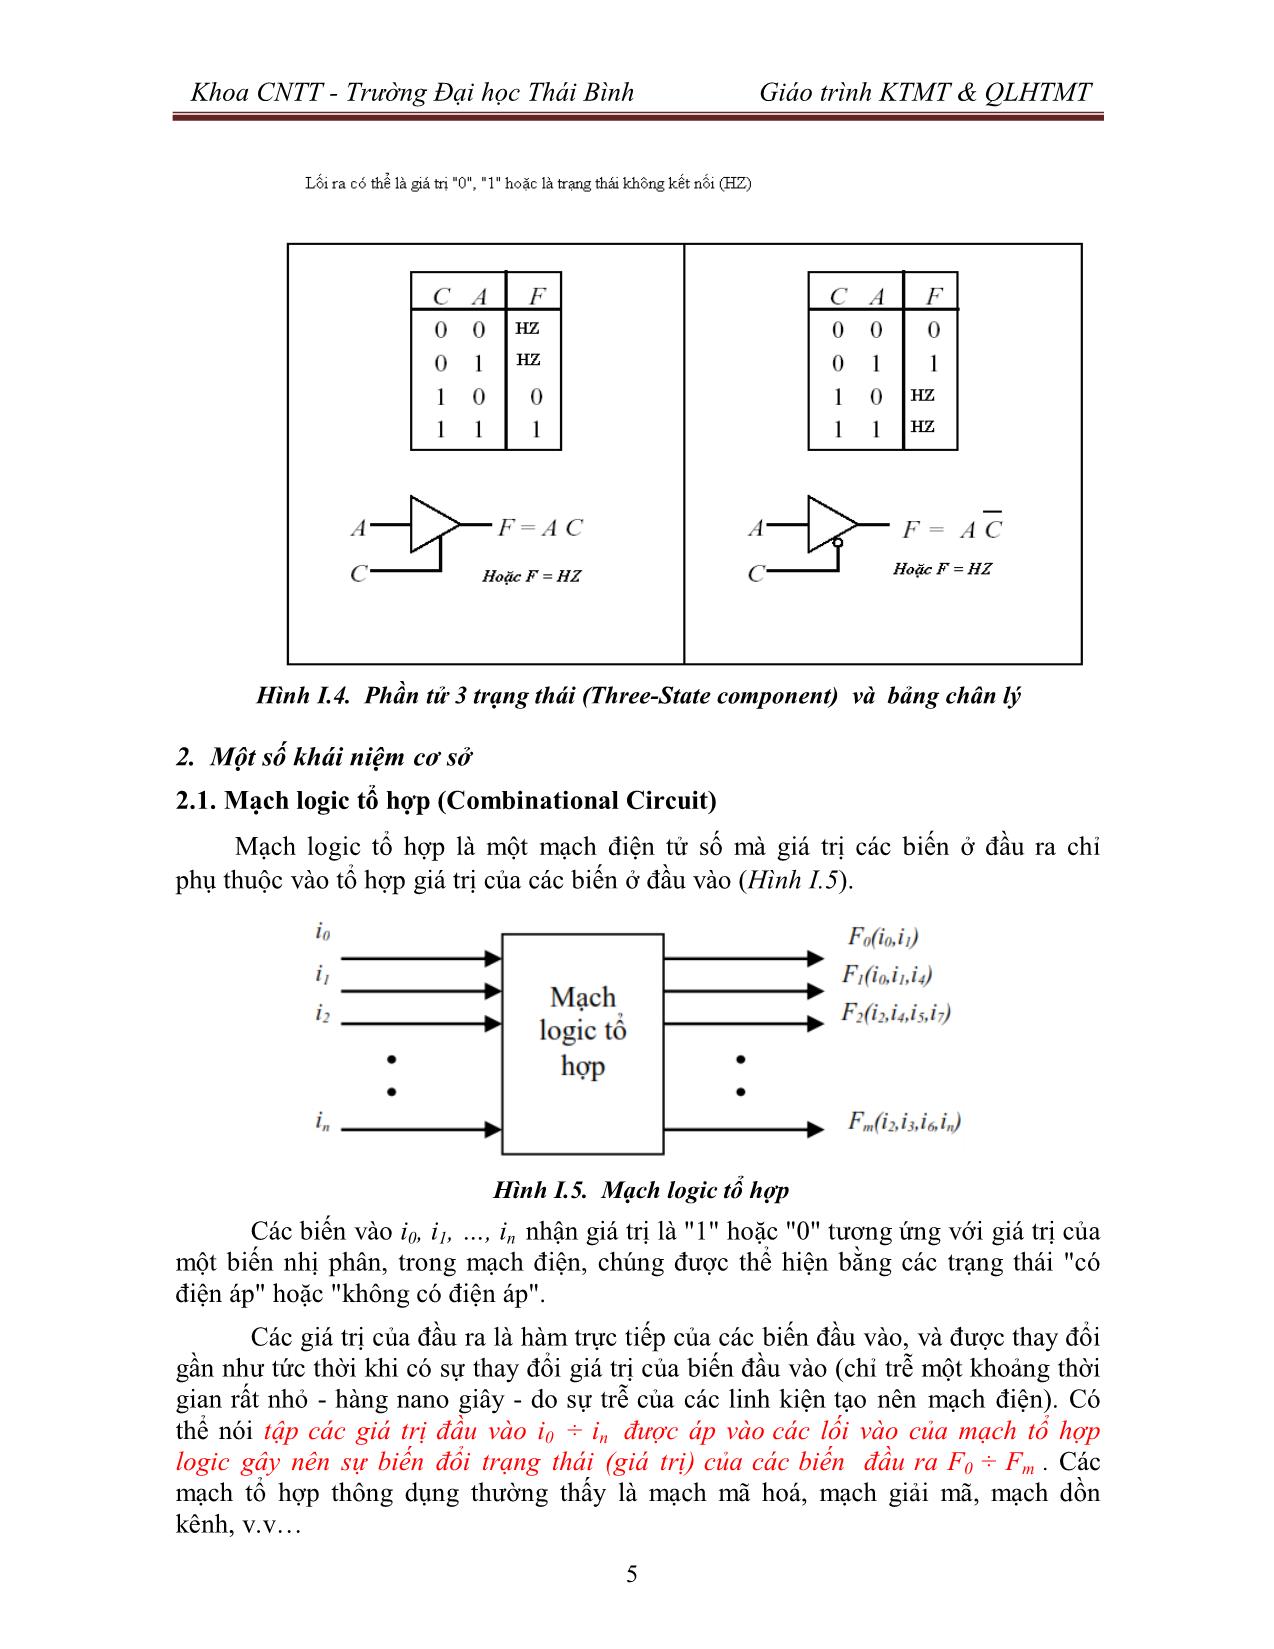 Giáo trình Kiến trúc máy tính & Quản lý hệ thống máy tính (Phần 1) trang 6